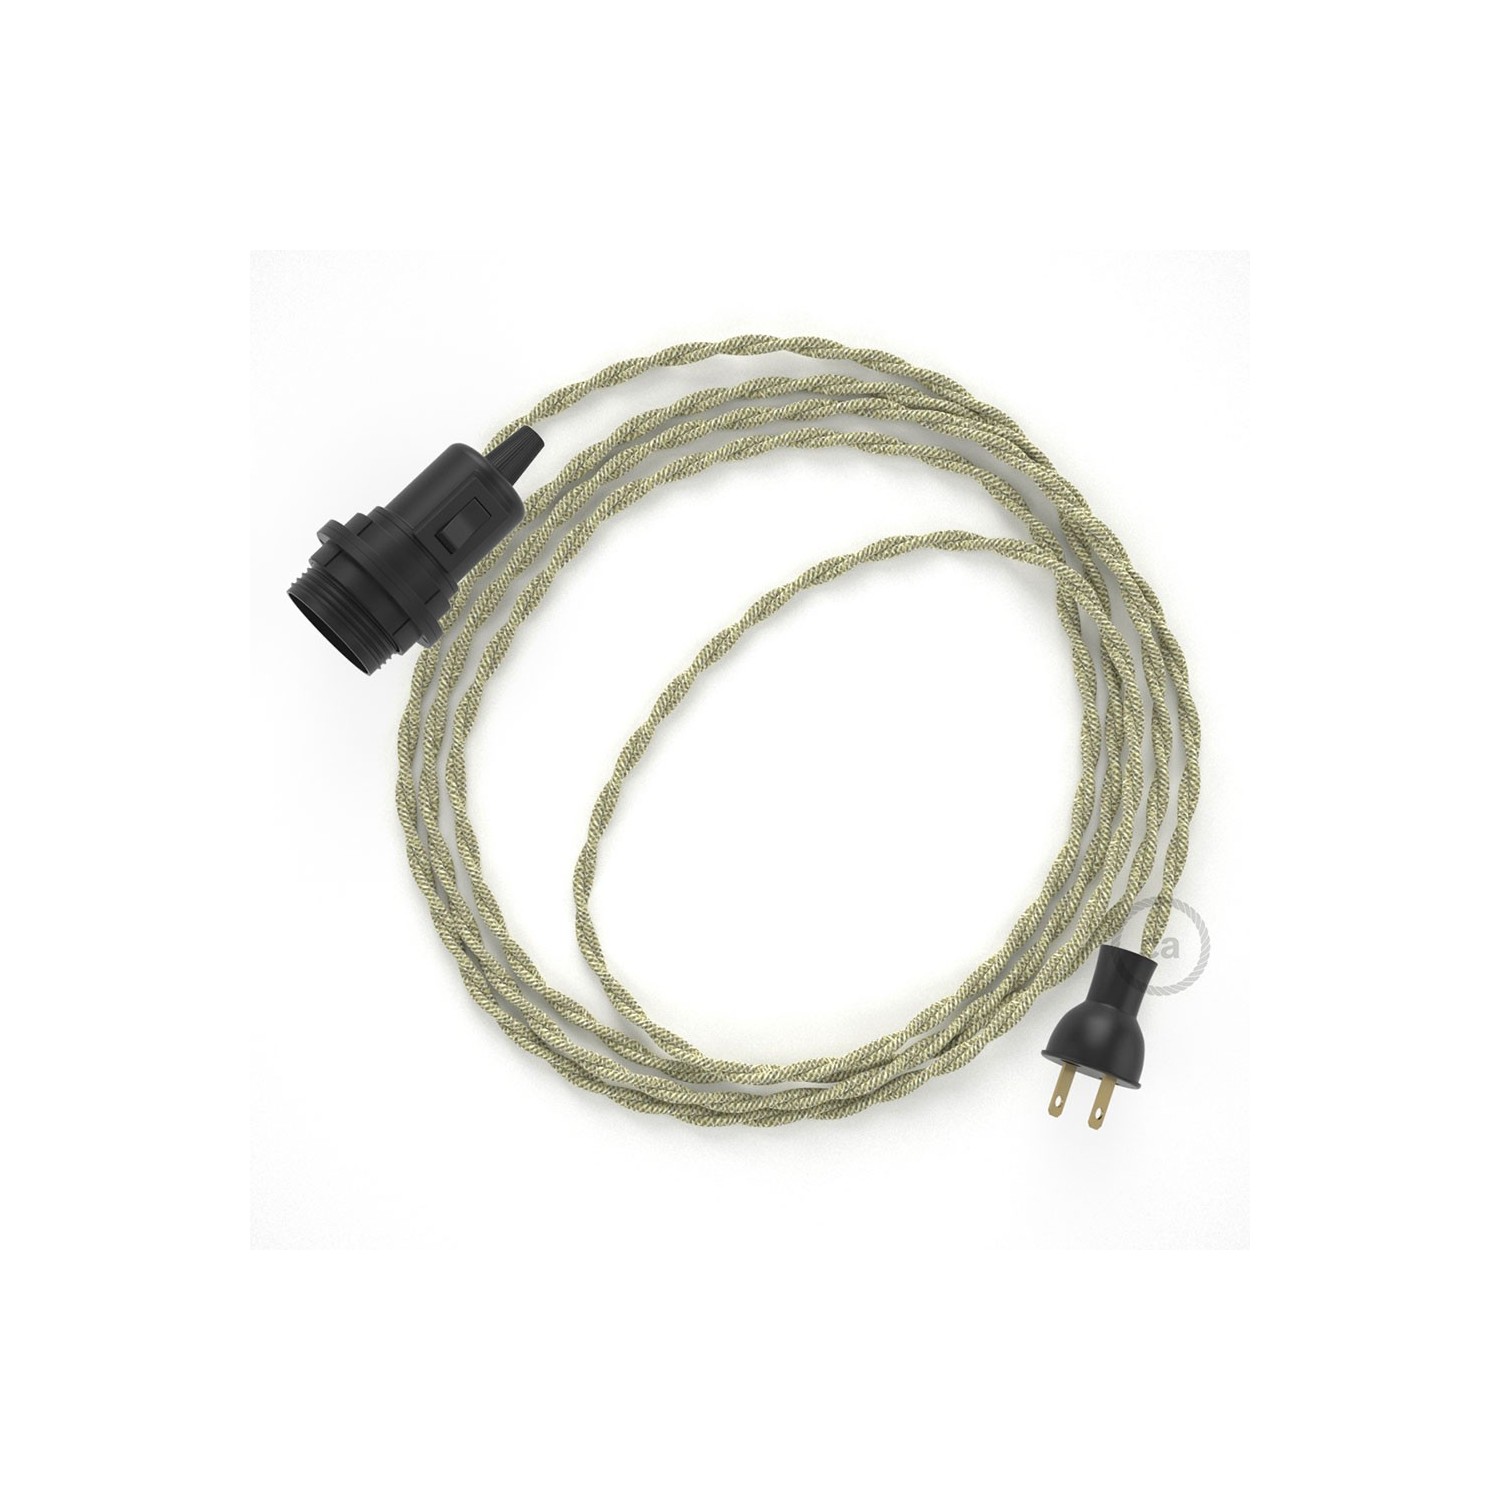 Crea tu Snake para pantalla con cable de Lino Natural Neutro TN01, socket y enchufe, y trae la luz donde tu quieras.